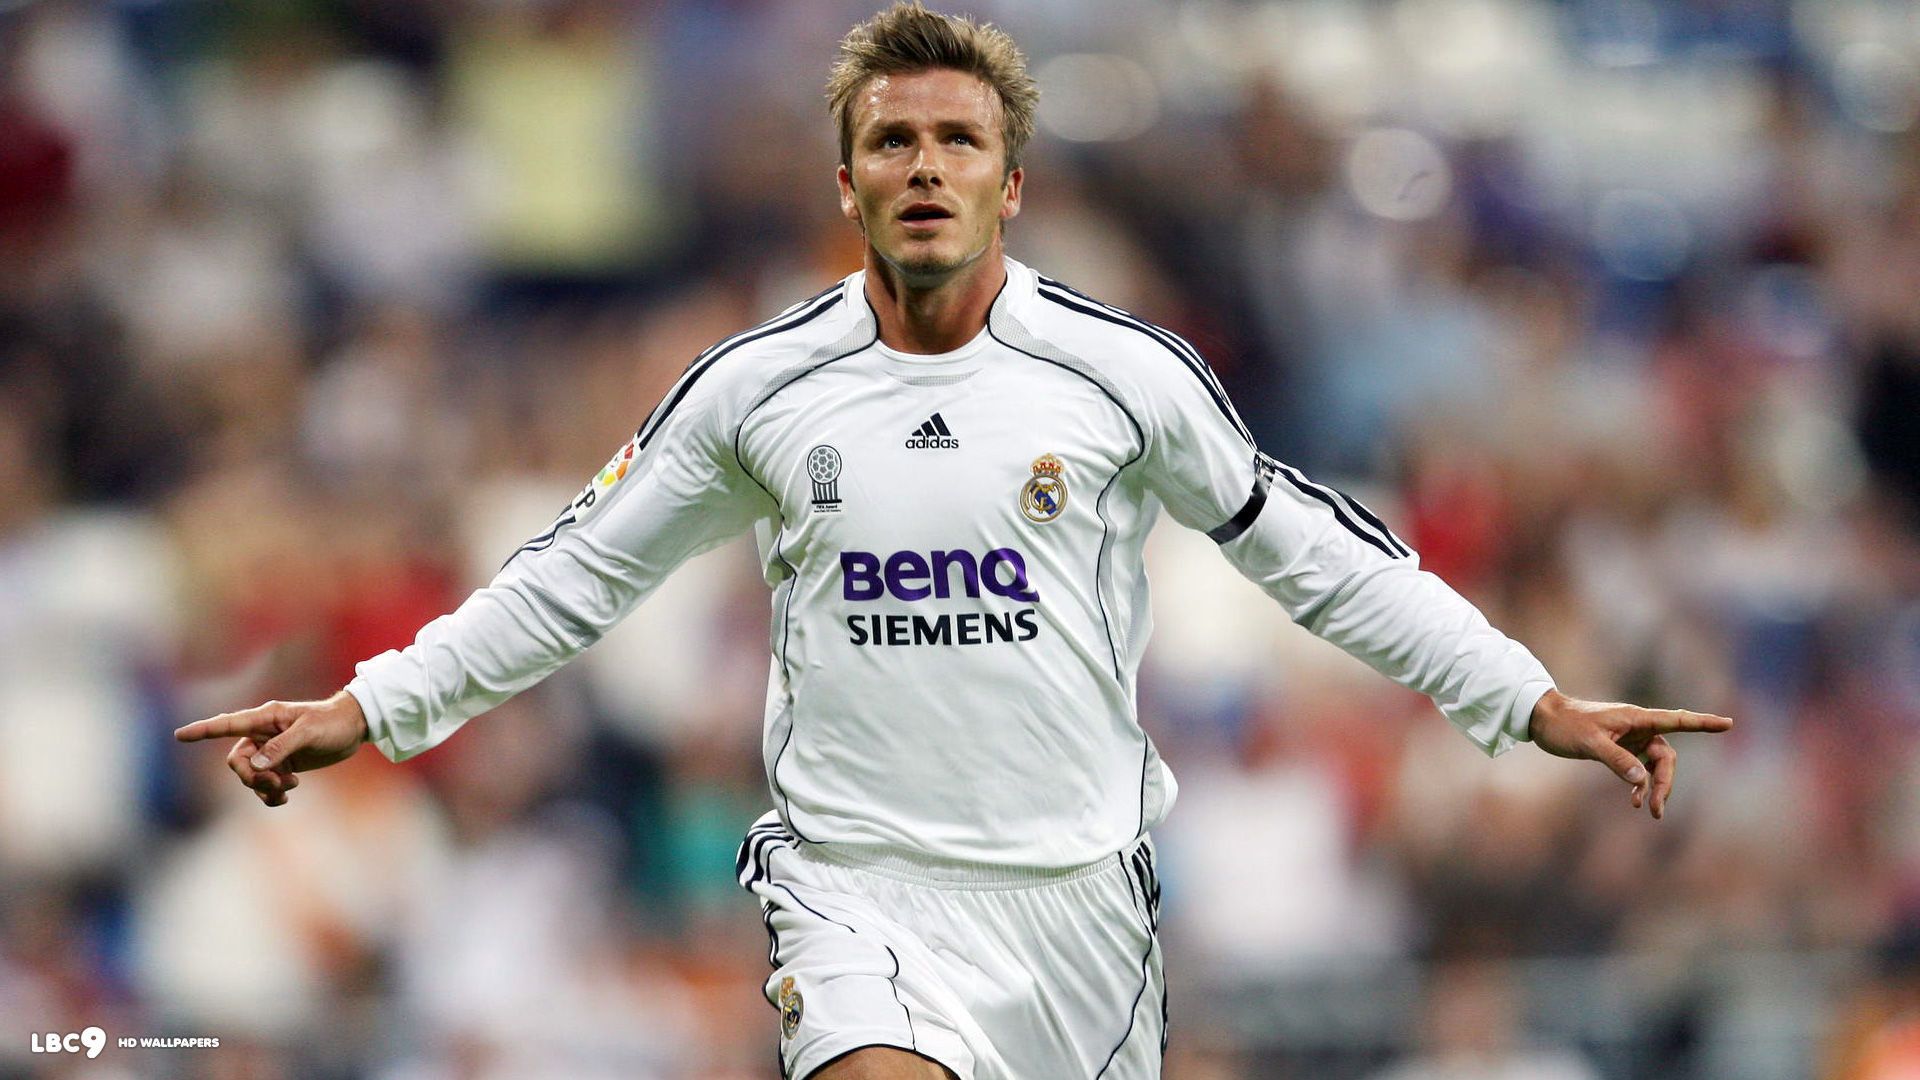 David Beckham Real Madrid Wallpapers on WallpaperDog